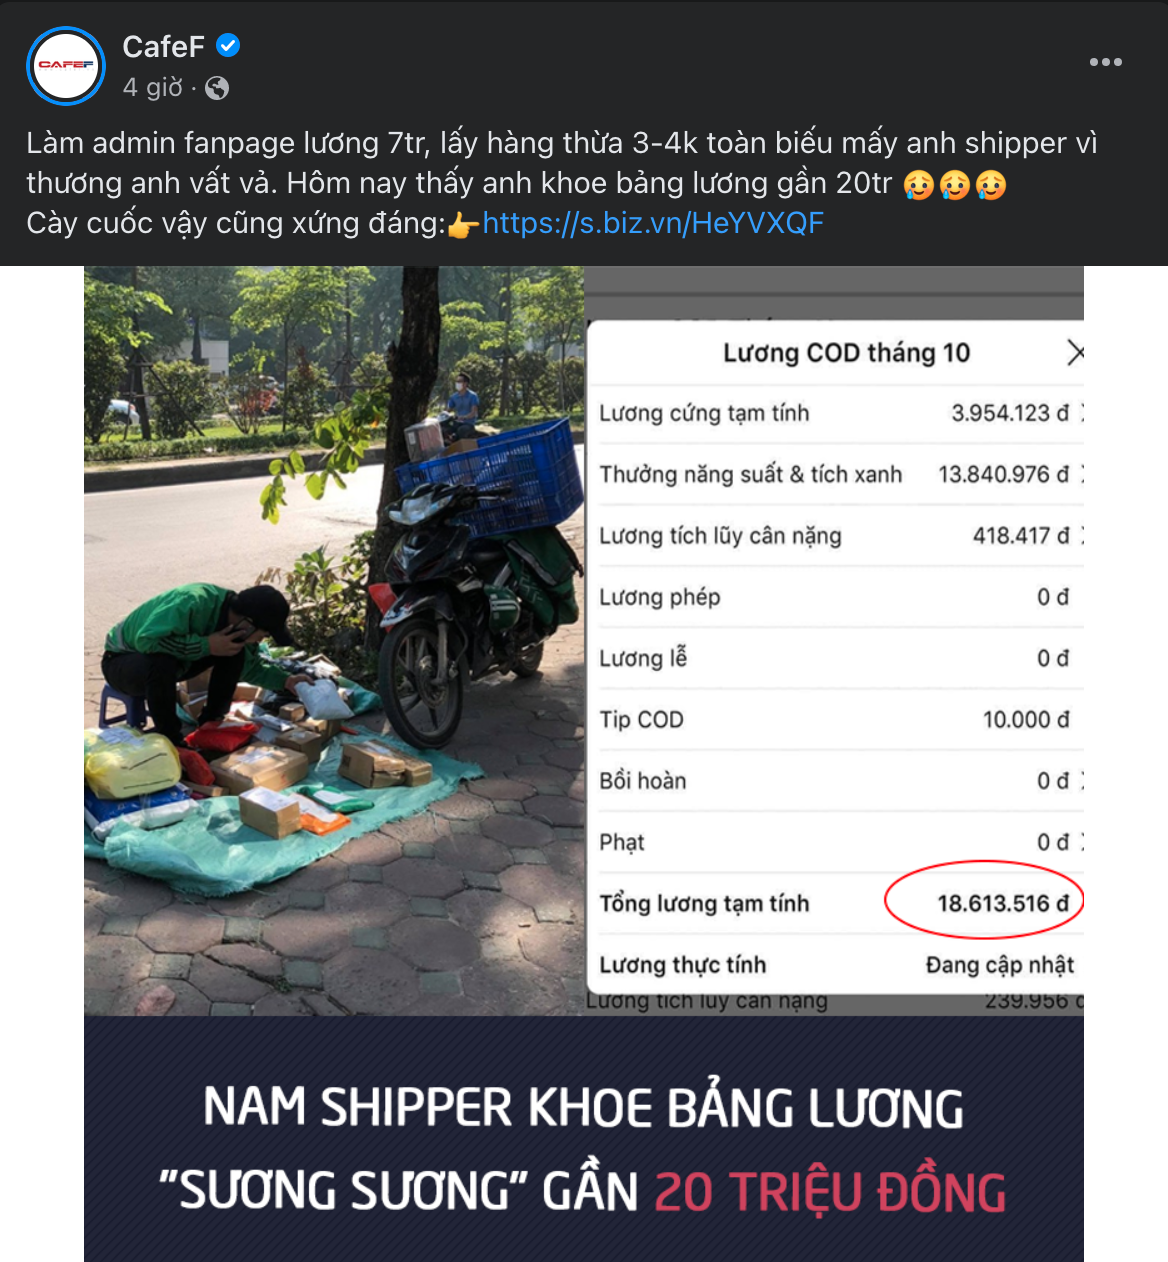 Diem-nong-MXH-ngay-25-10-Cong-dong-Trader-Viet-Nam-TraderViet4.png